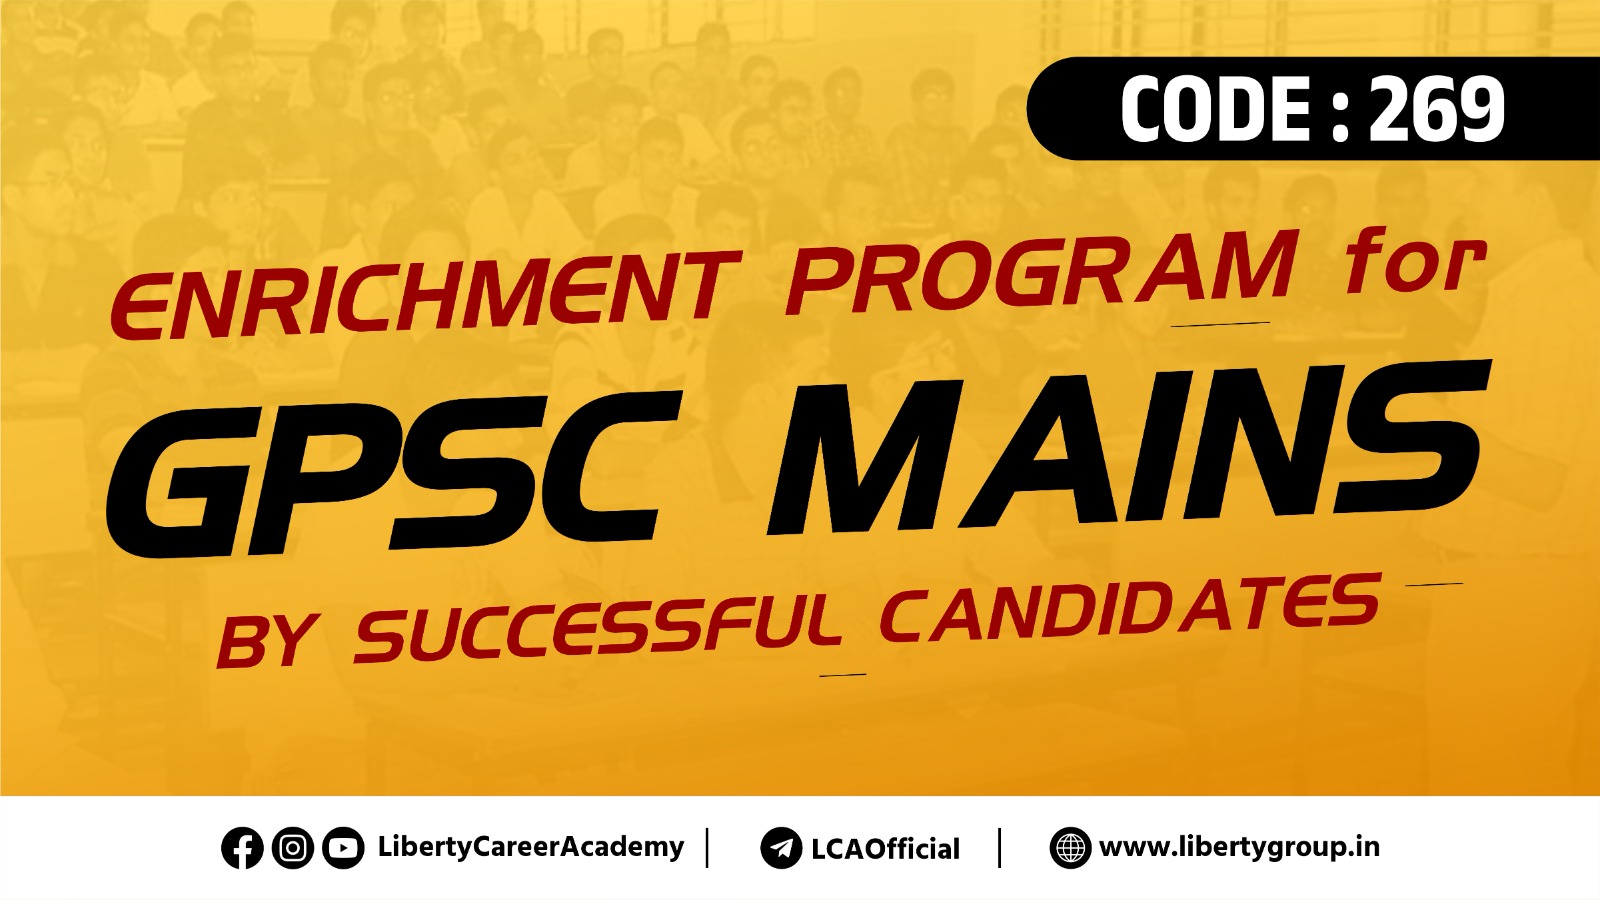 GPSC Mains- Enrichment Program LIVE Online Code 269